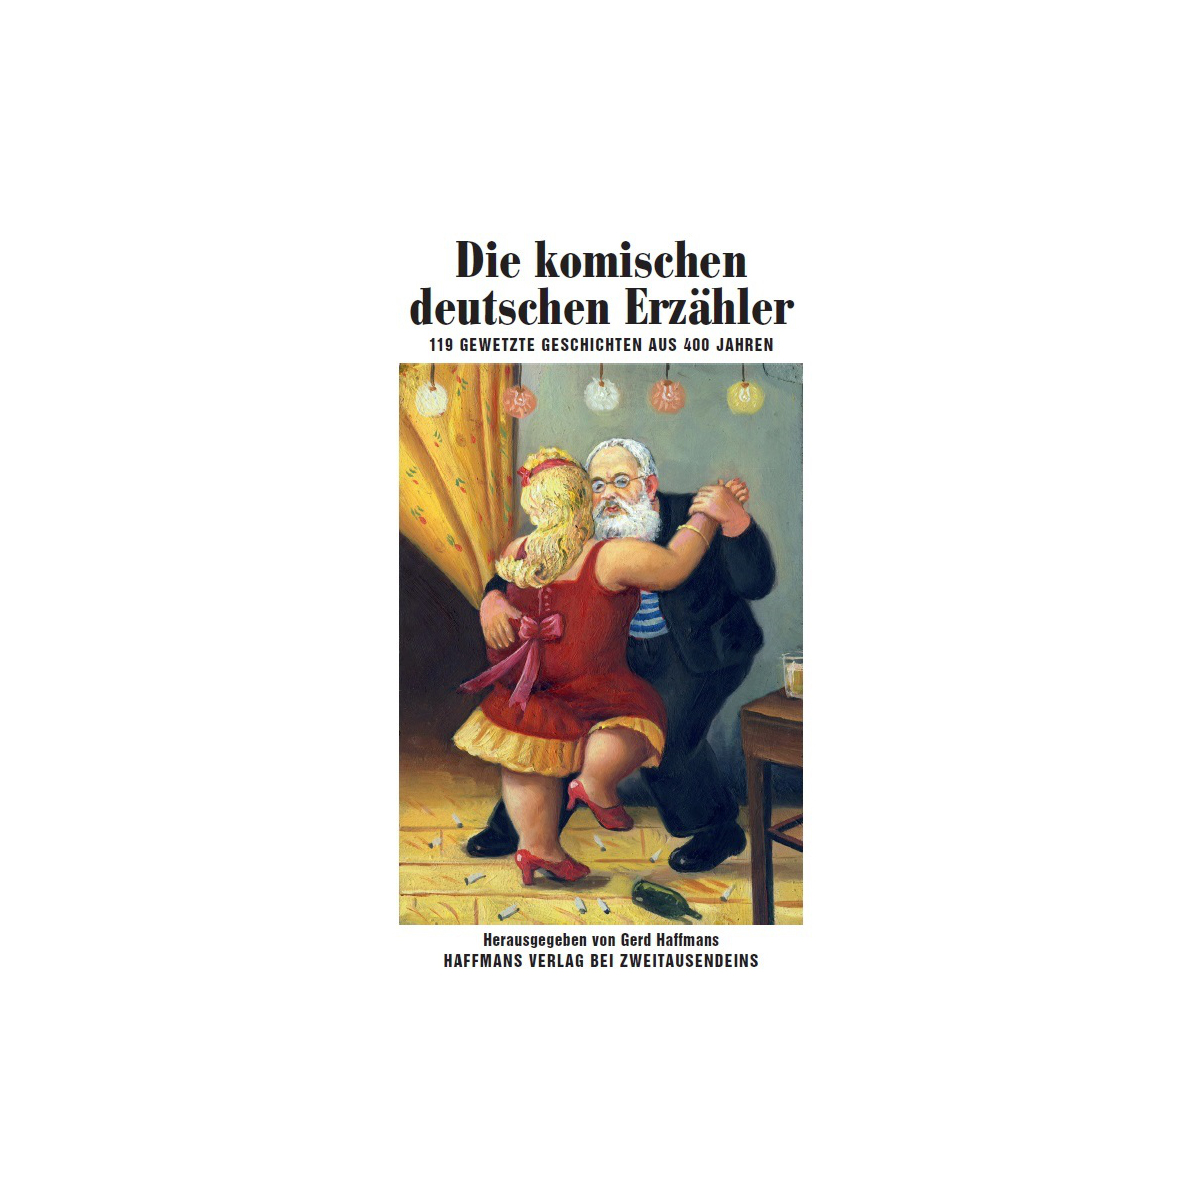 Die komischen deutschen Erzähler. 119 gewetzte Geschichten aus 400 Jahren. Zweitausendeins Verlag